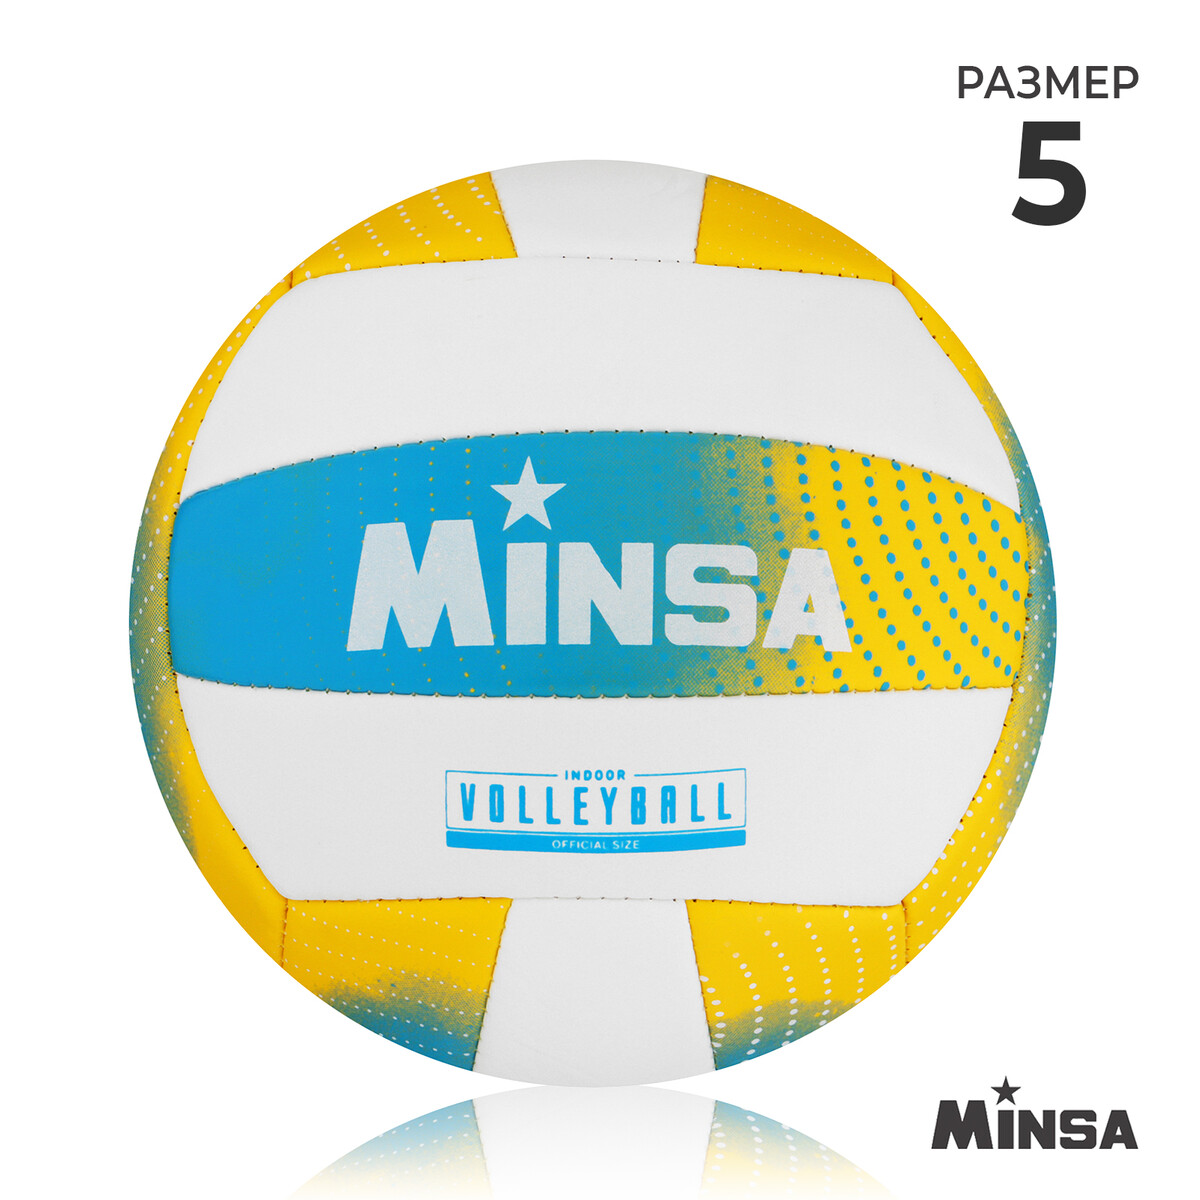 Мяч волейбольный minsa, pu, машинная сшивка, 18 панелей, р. 5 atemi мяч волейбольный spark